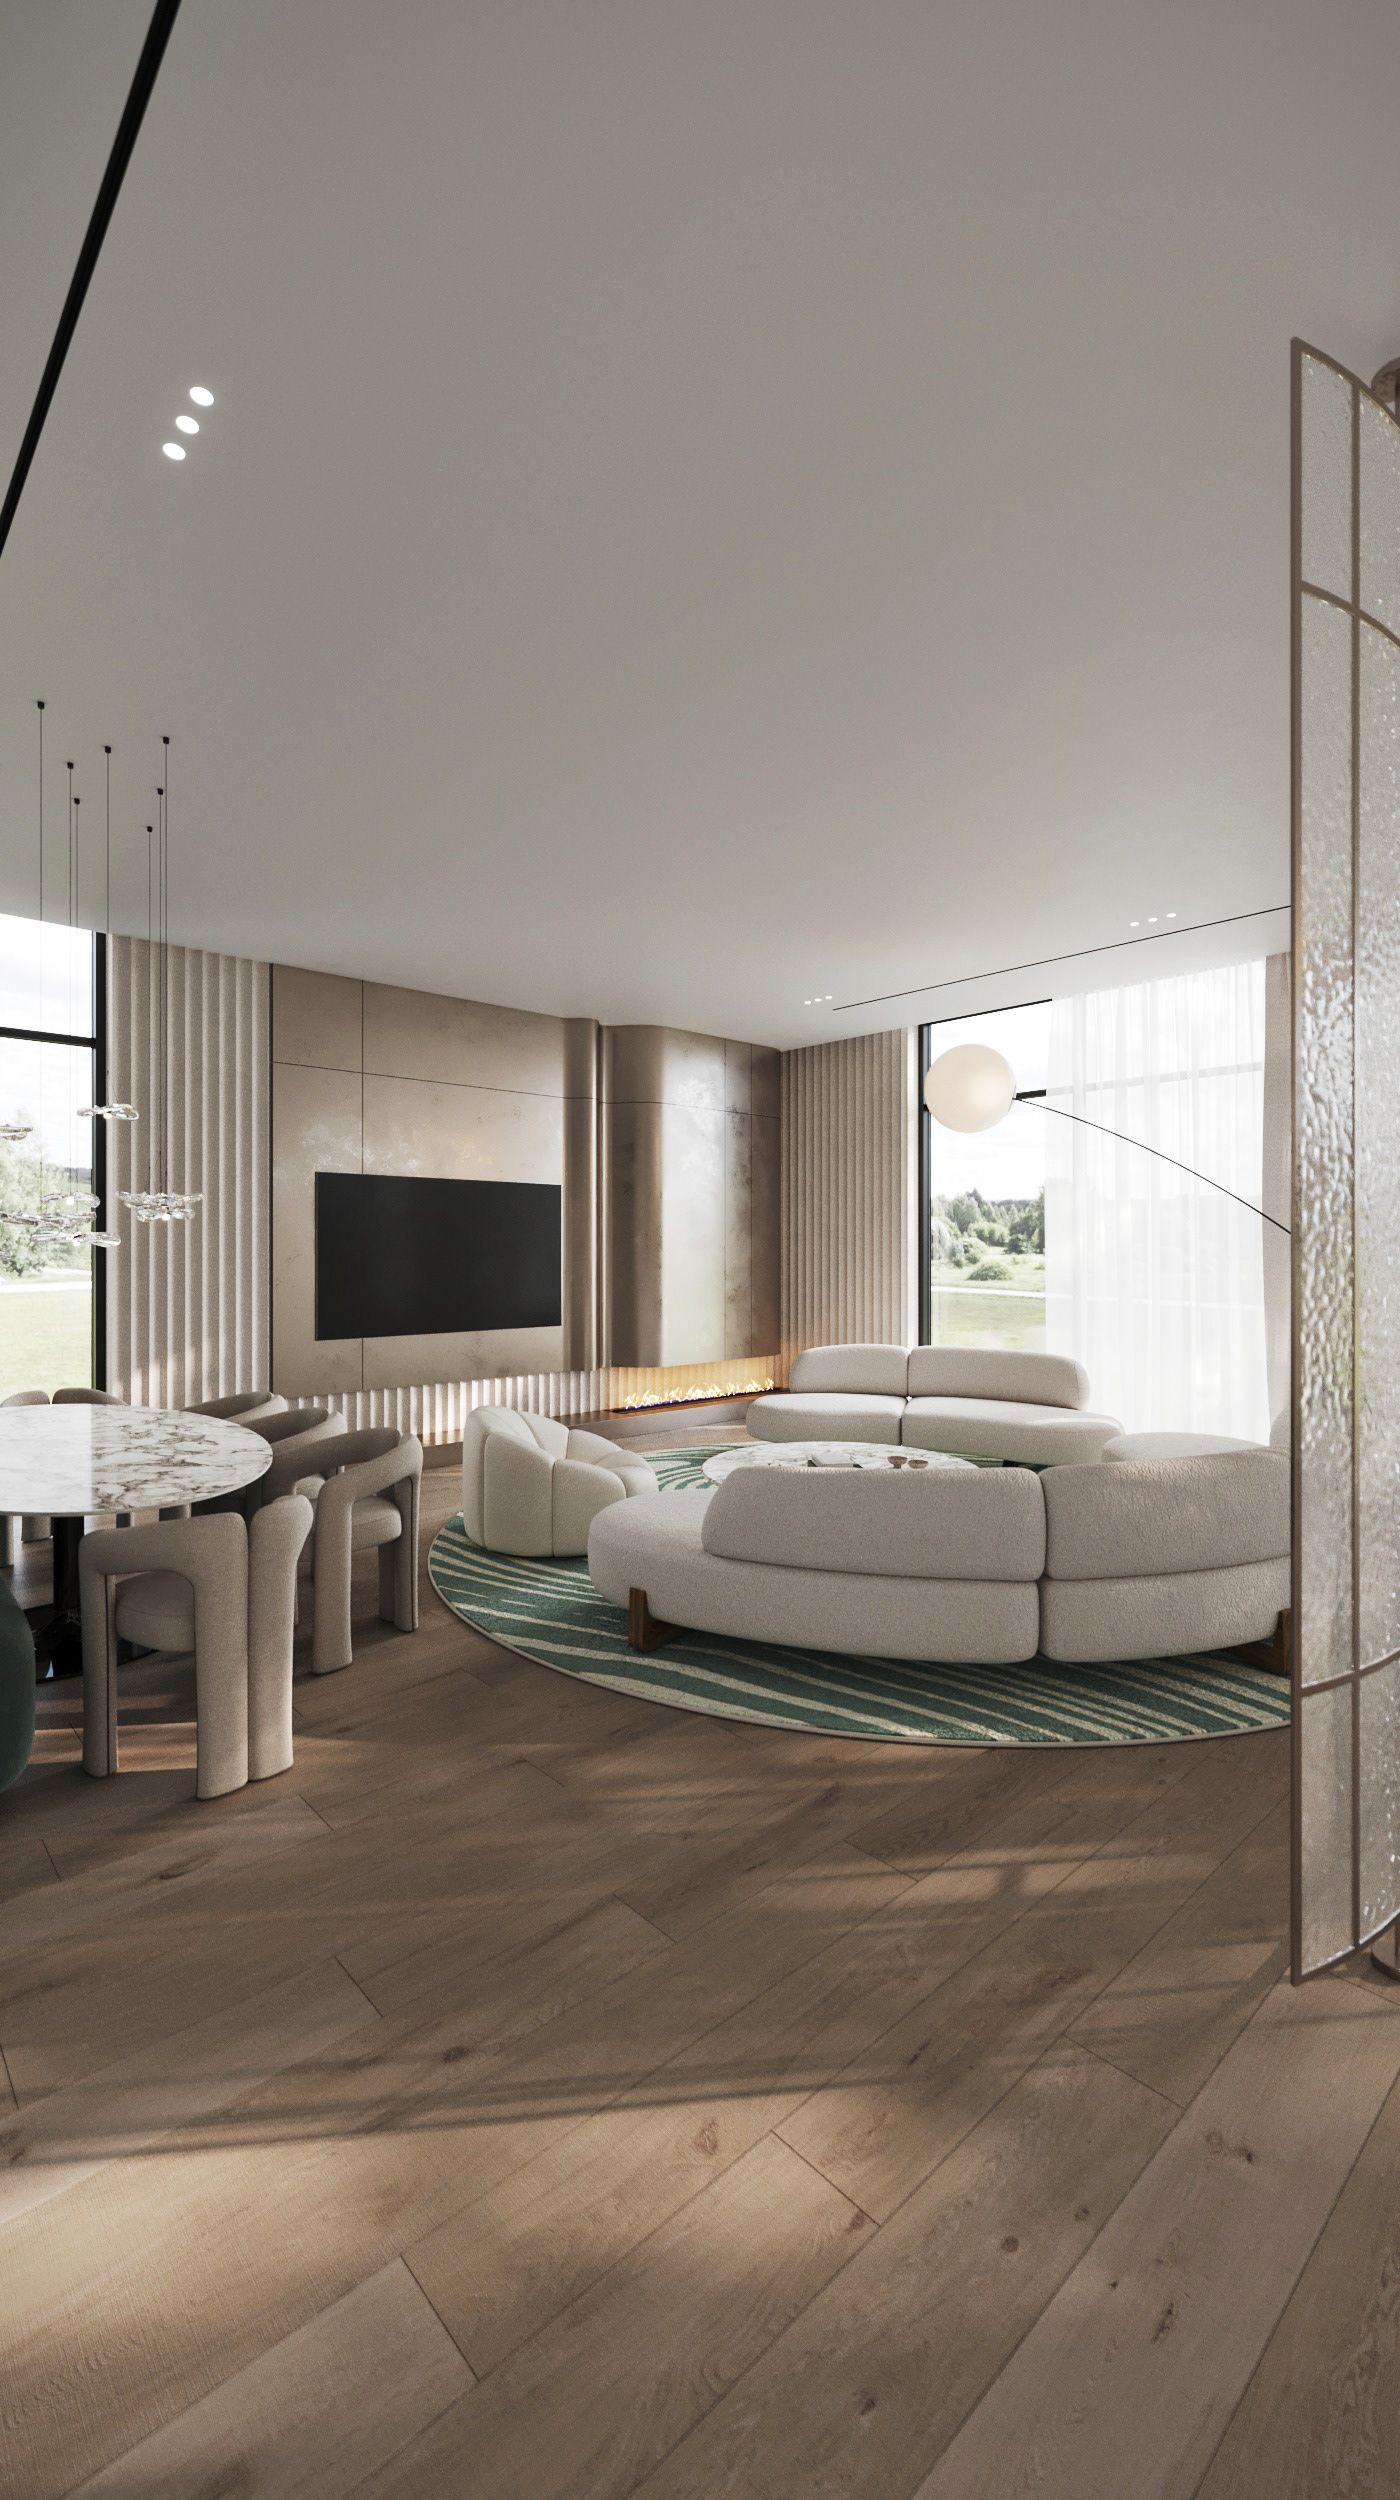 3ds max architecture corona design Interior interior design  living Render visualization